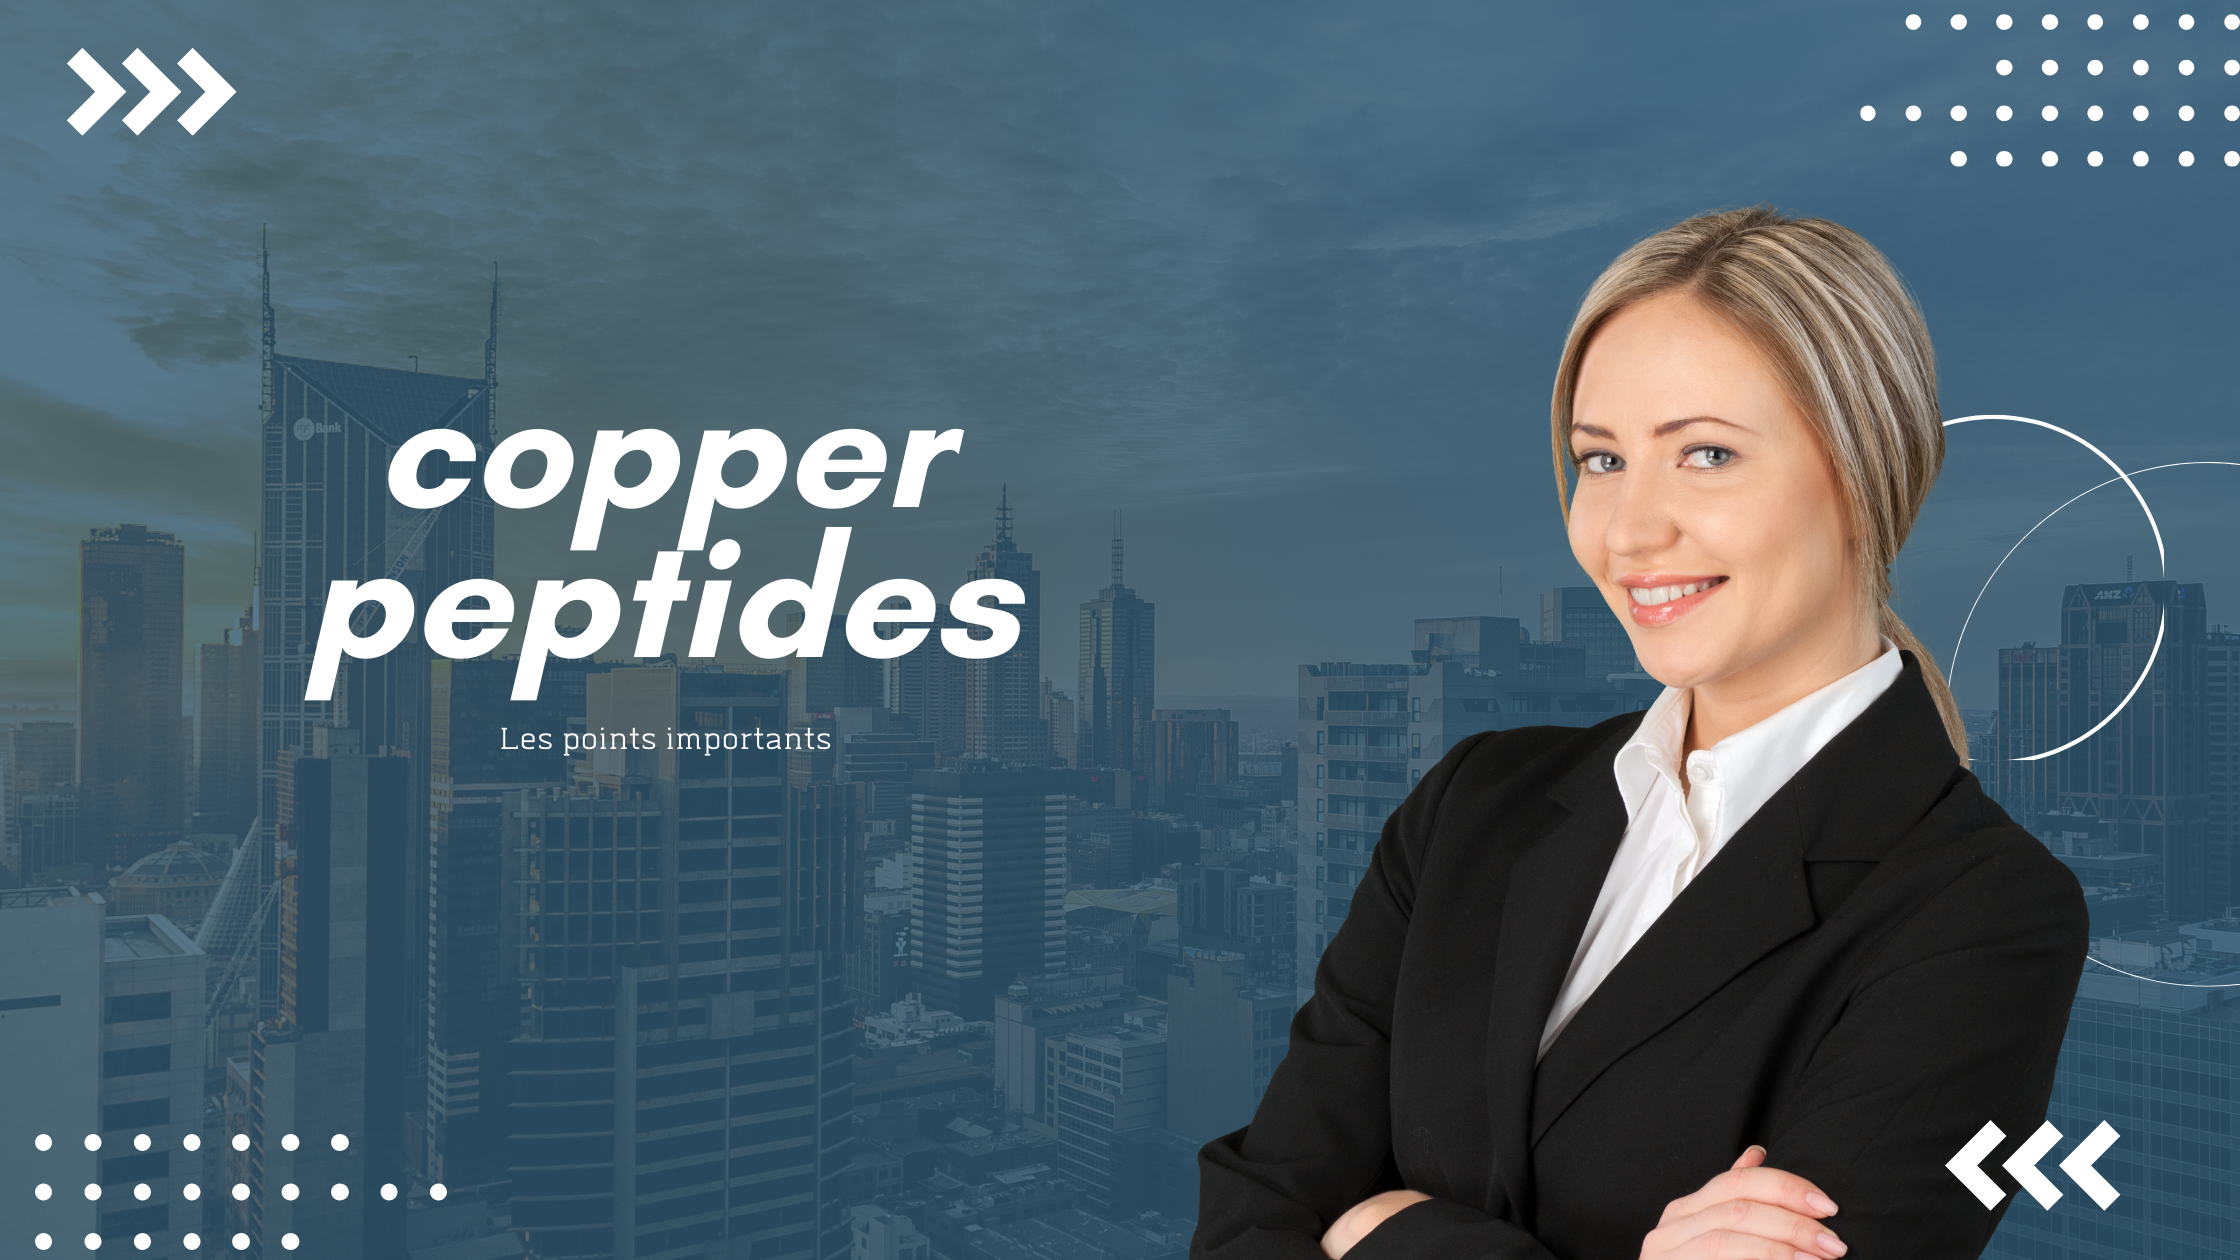 copper peptides | Les points importants